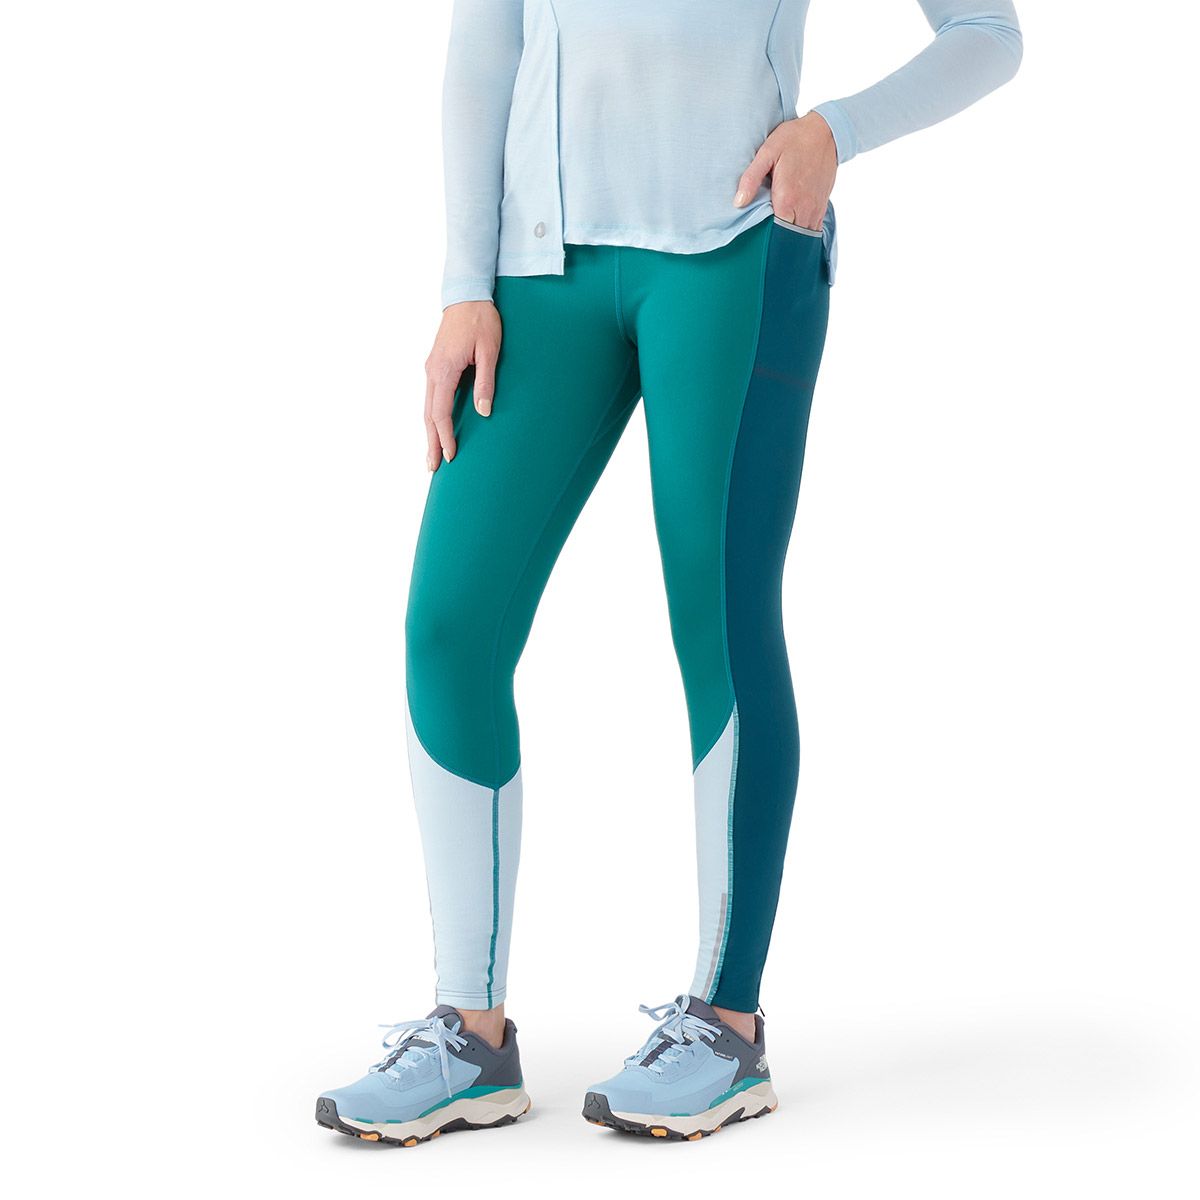 HeatLab Fleece Lined Winter Yoga Pants - HY49 - Space Dye Dark Blue / XS